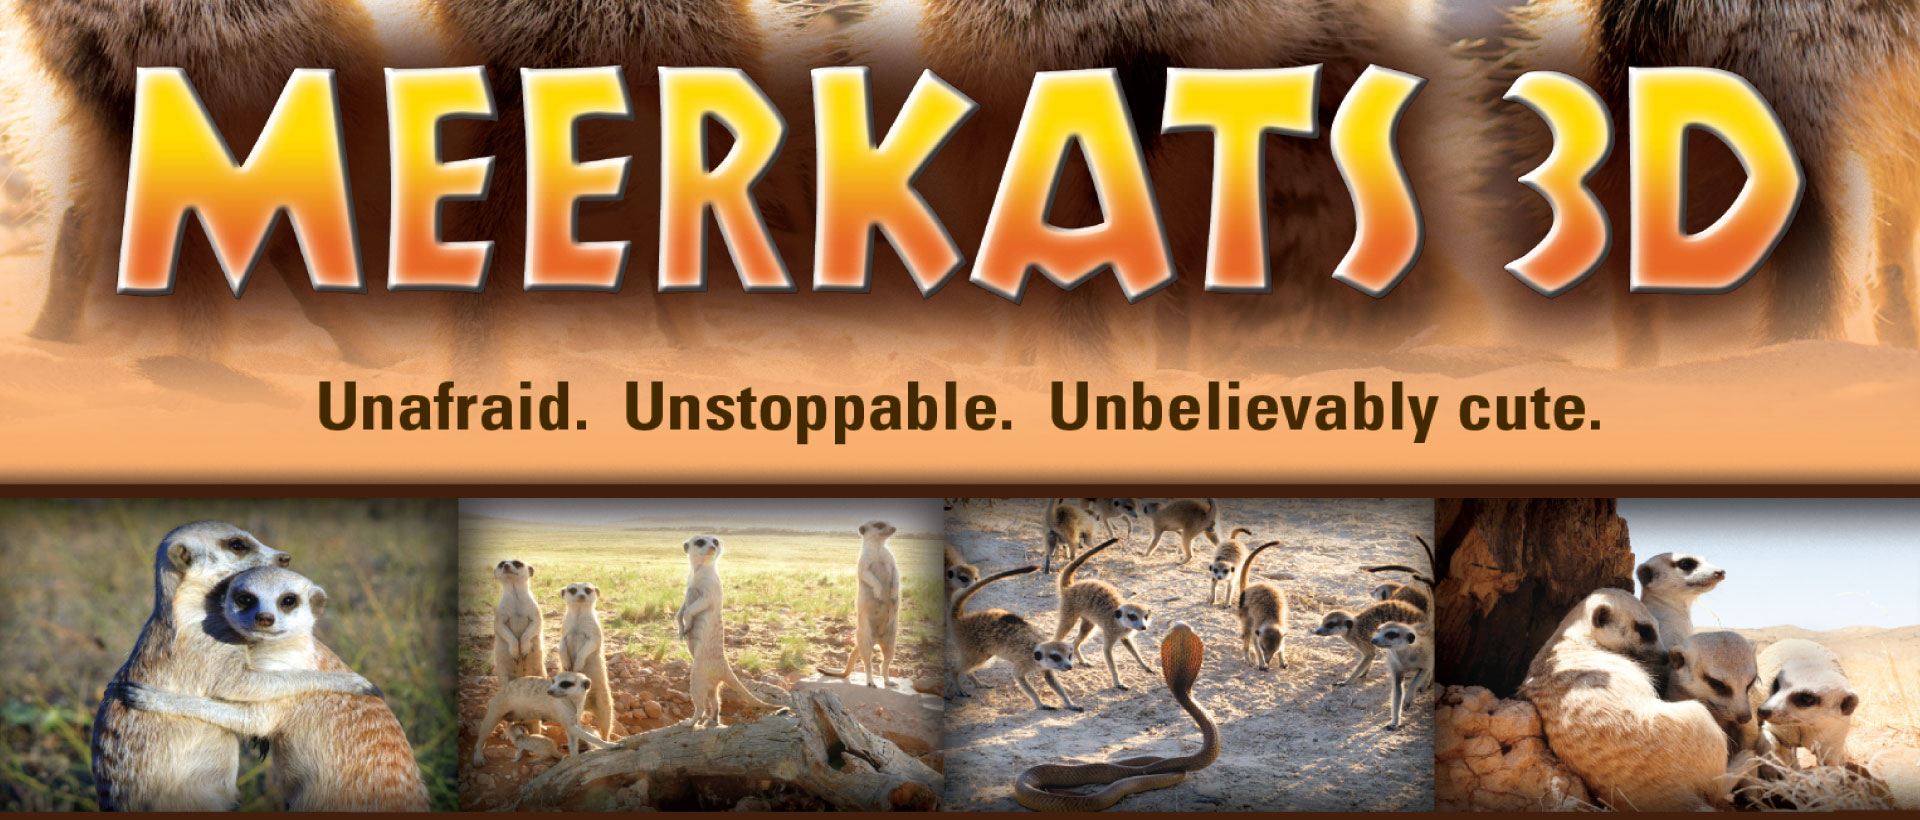 Meerkats 3D Movie